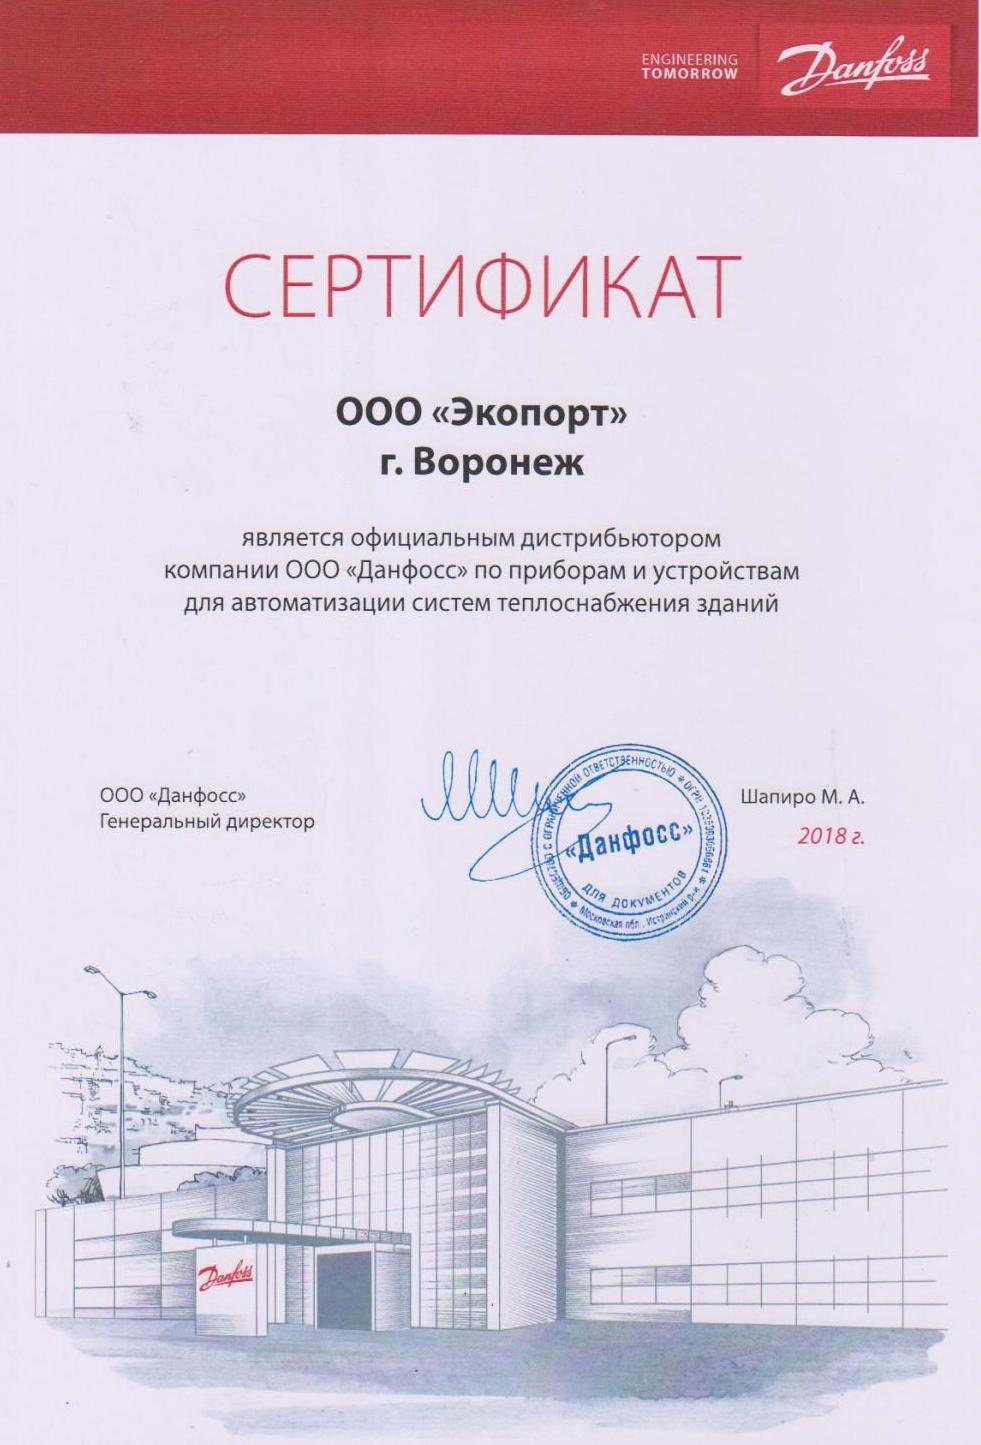 Официальный дистрибьютор по приборам и устройствам для автоматизации систем теплоснабжения «Данфосс»